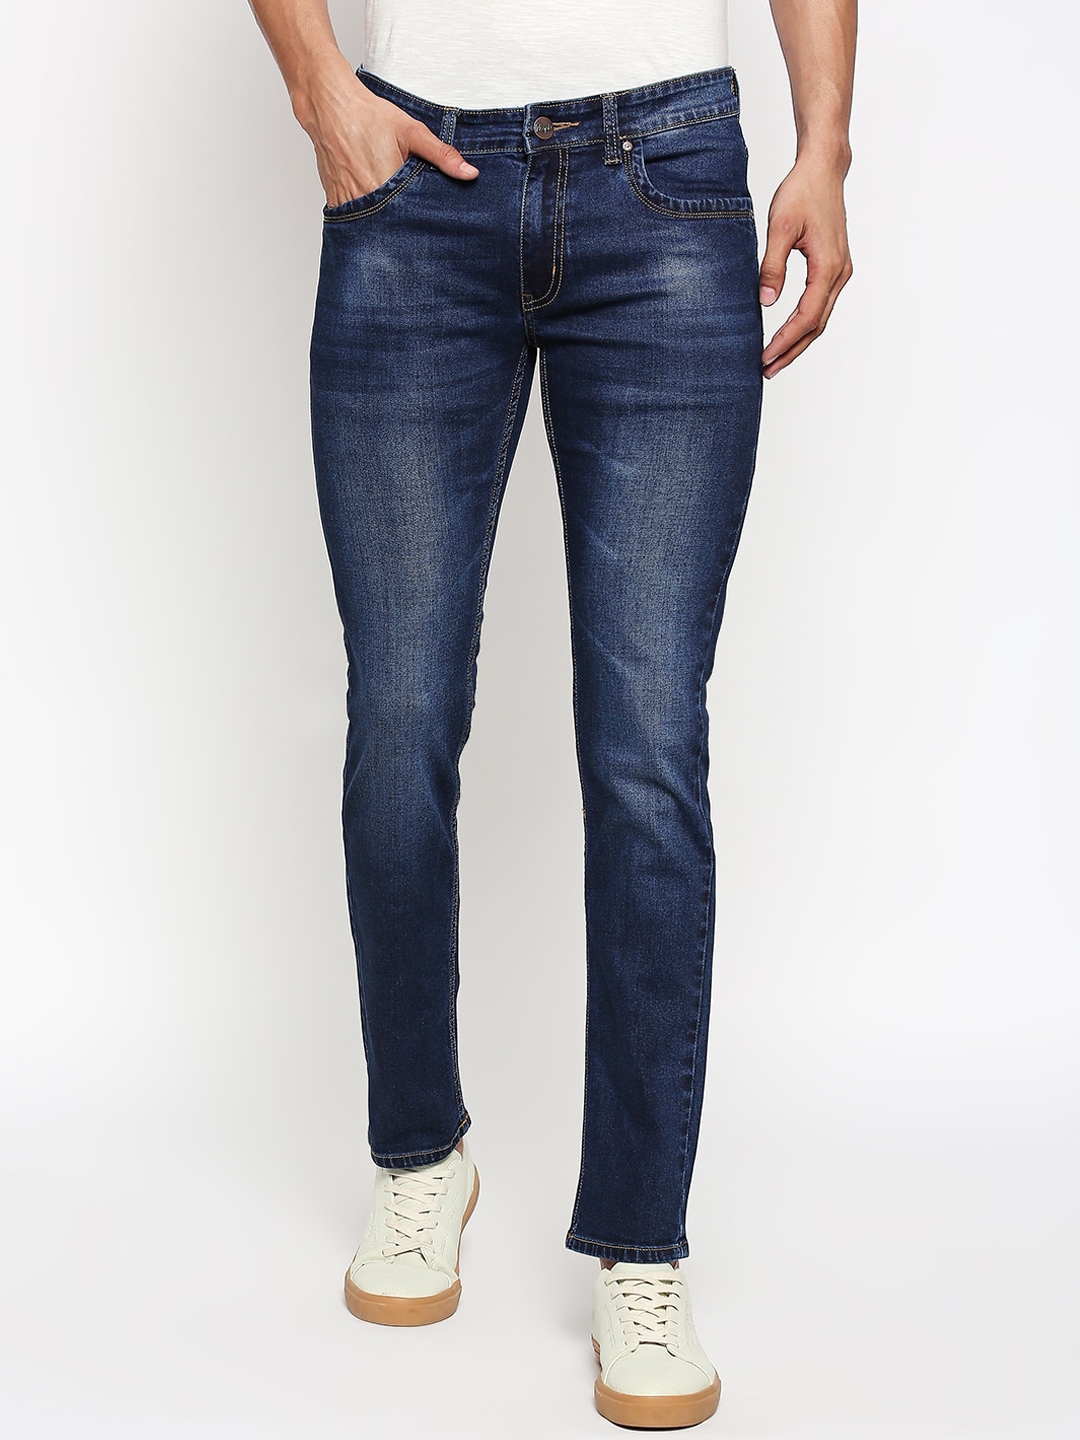 Buy People Men Navy Blue Skinny Fit Mid Rise Clean Look Jeans - Jeans ...